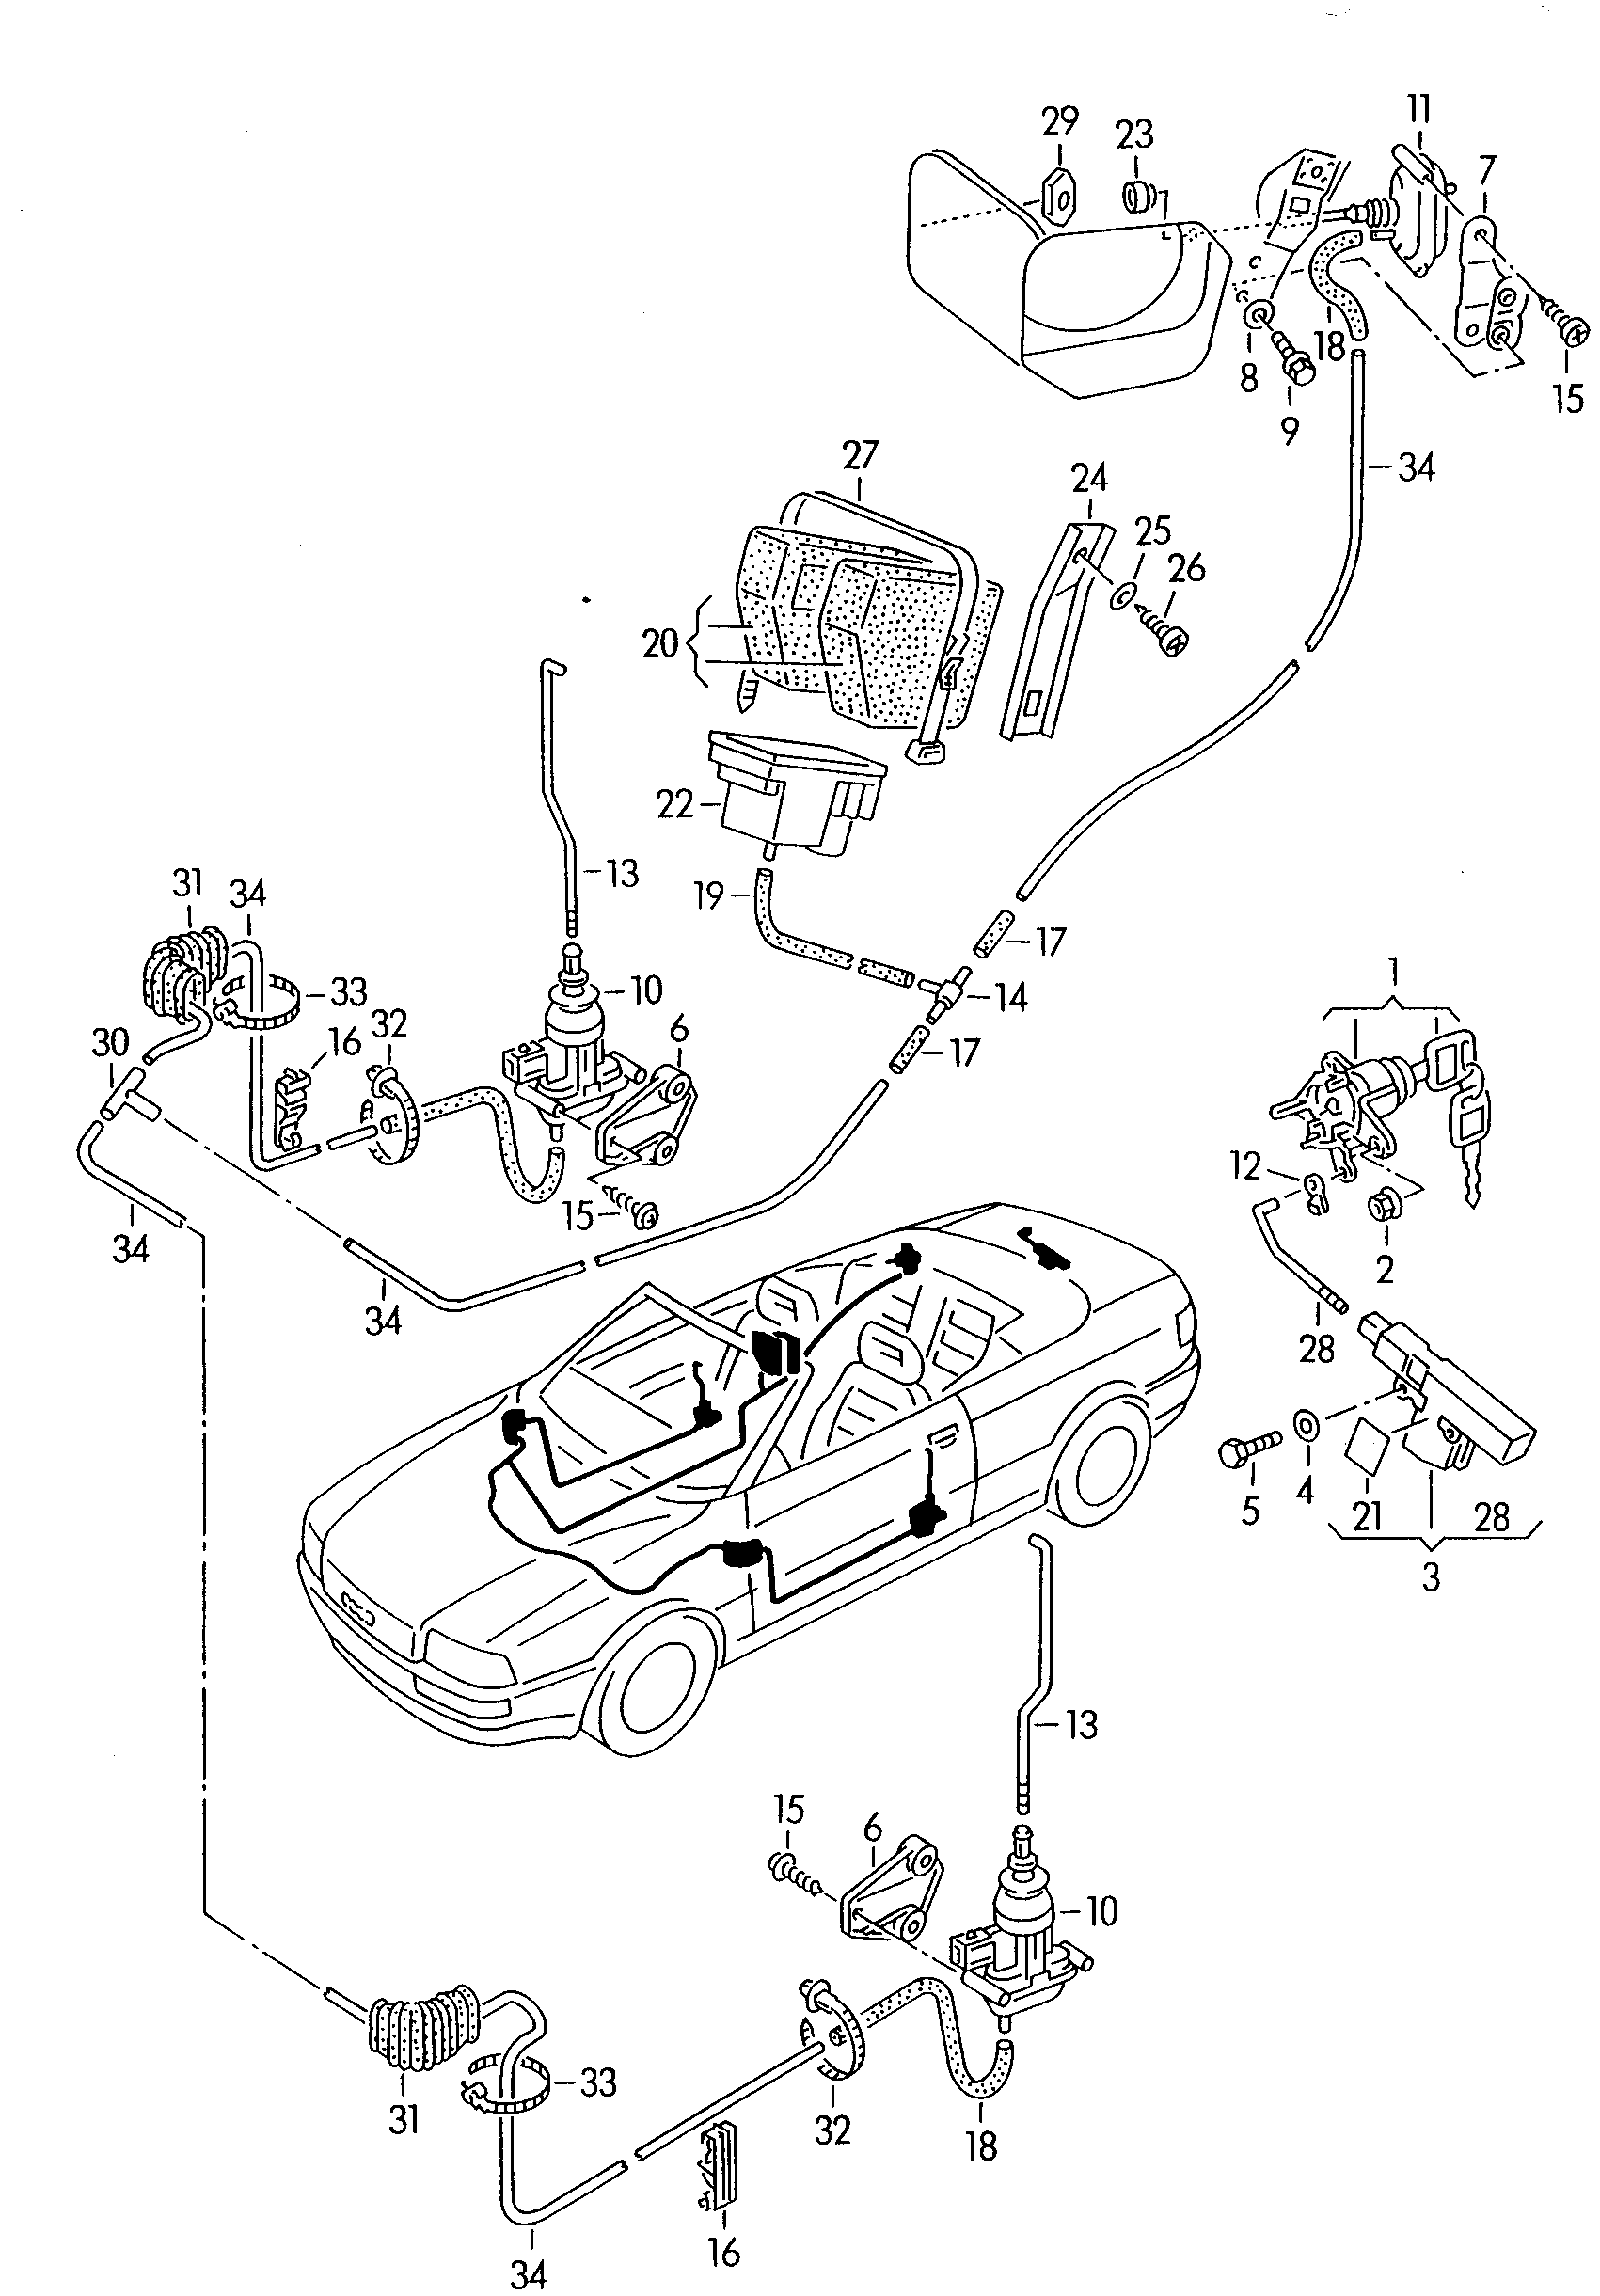 cierre centralizado - Audi Cabriolet(ACA)  